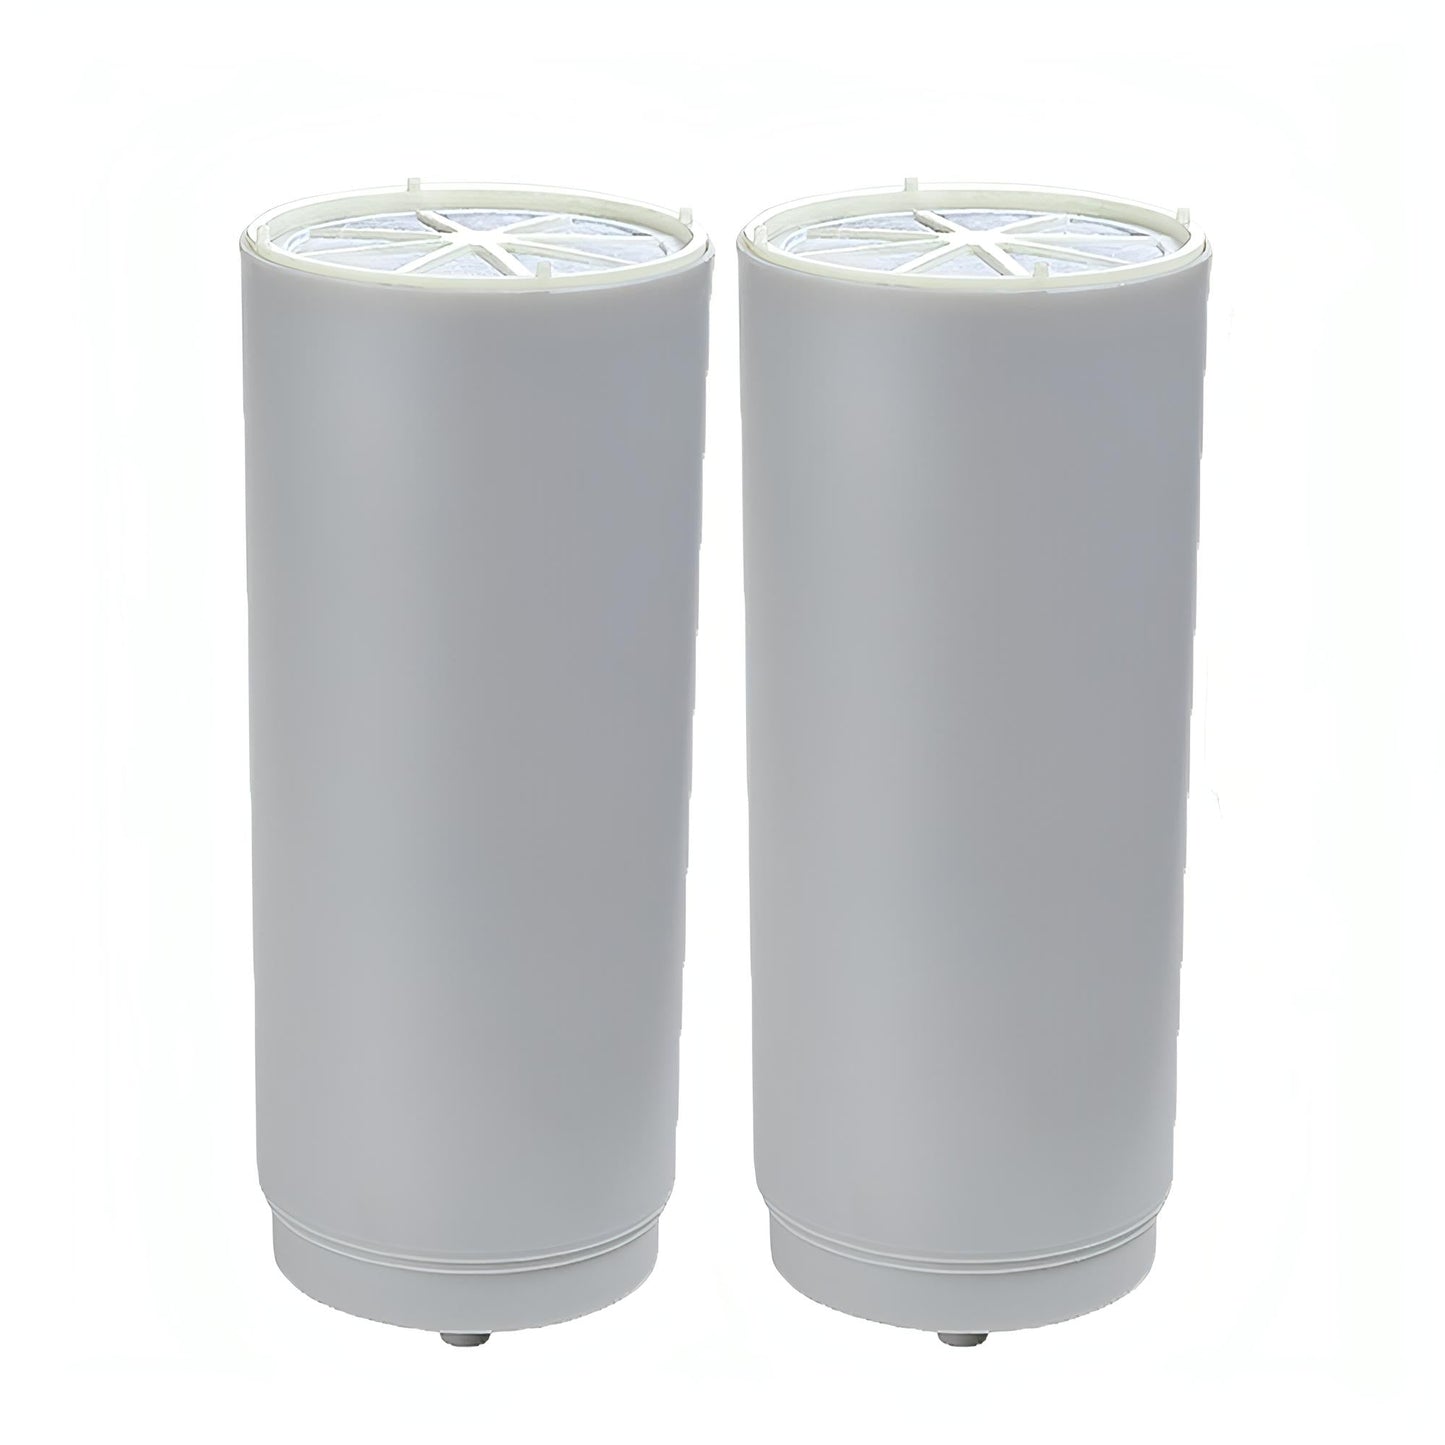 Repuestos de filtro de agua COMPACT x 2 unidades | DVIGI